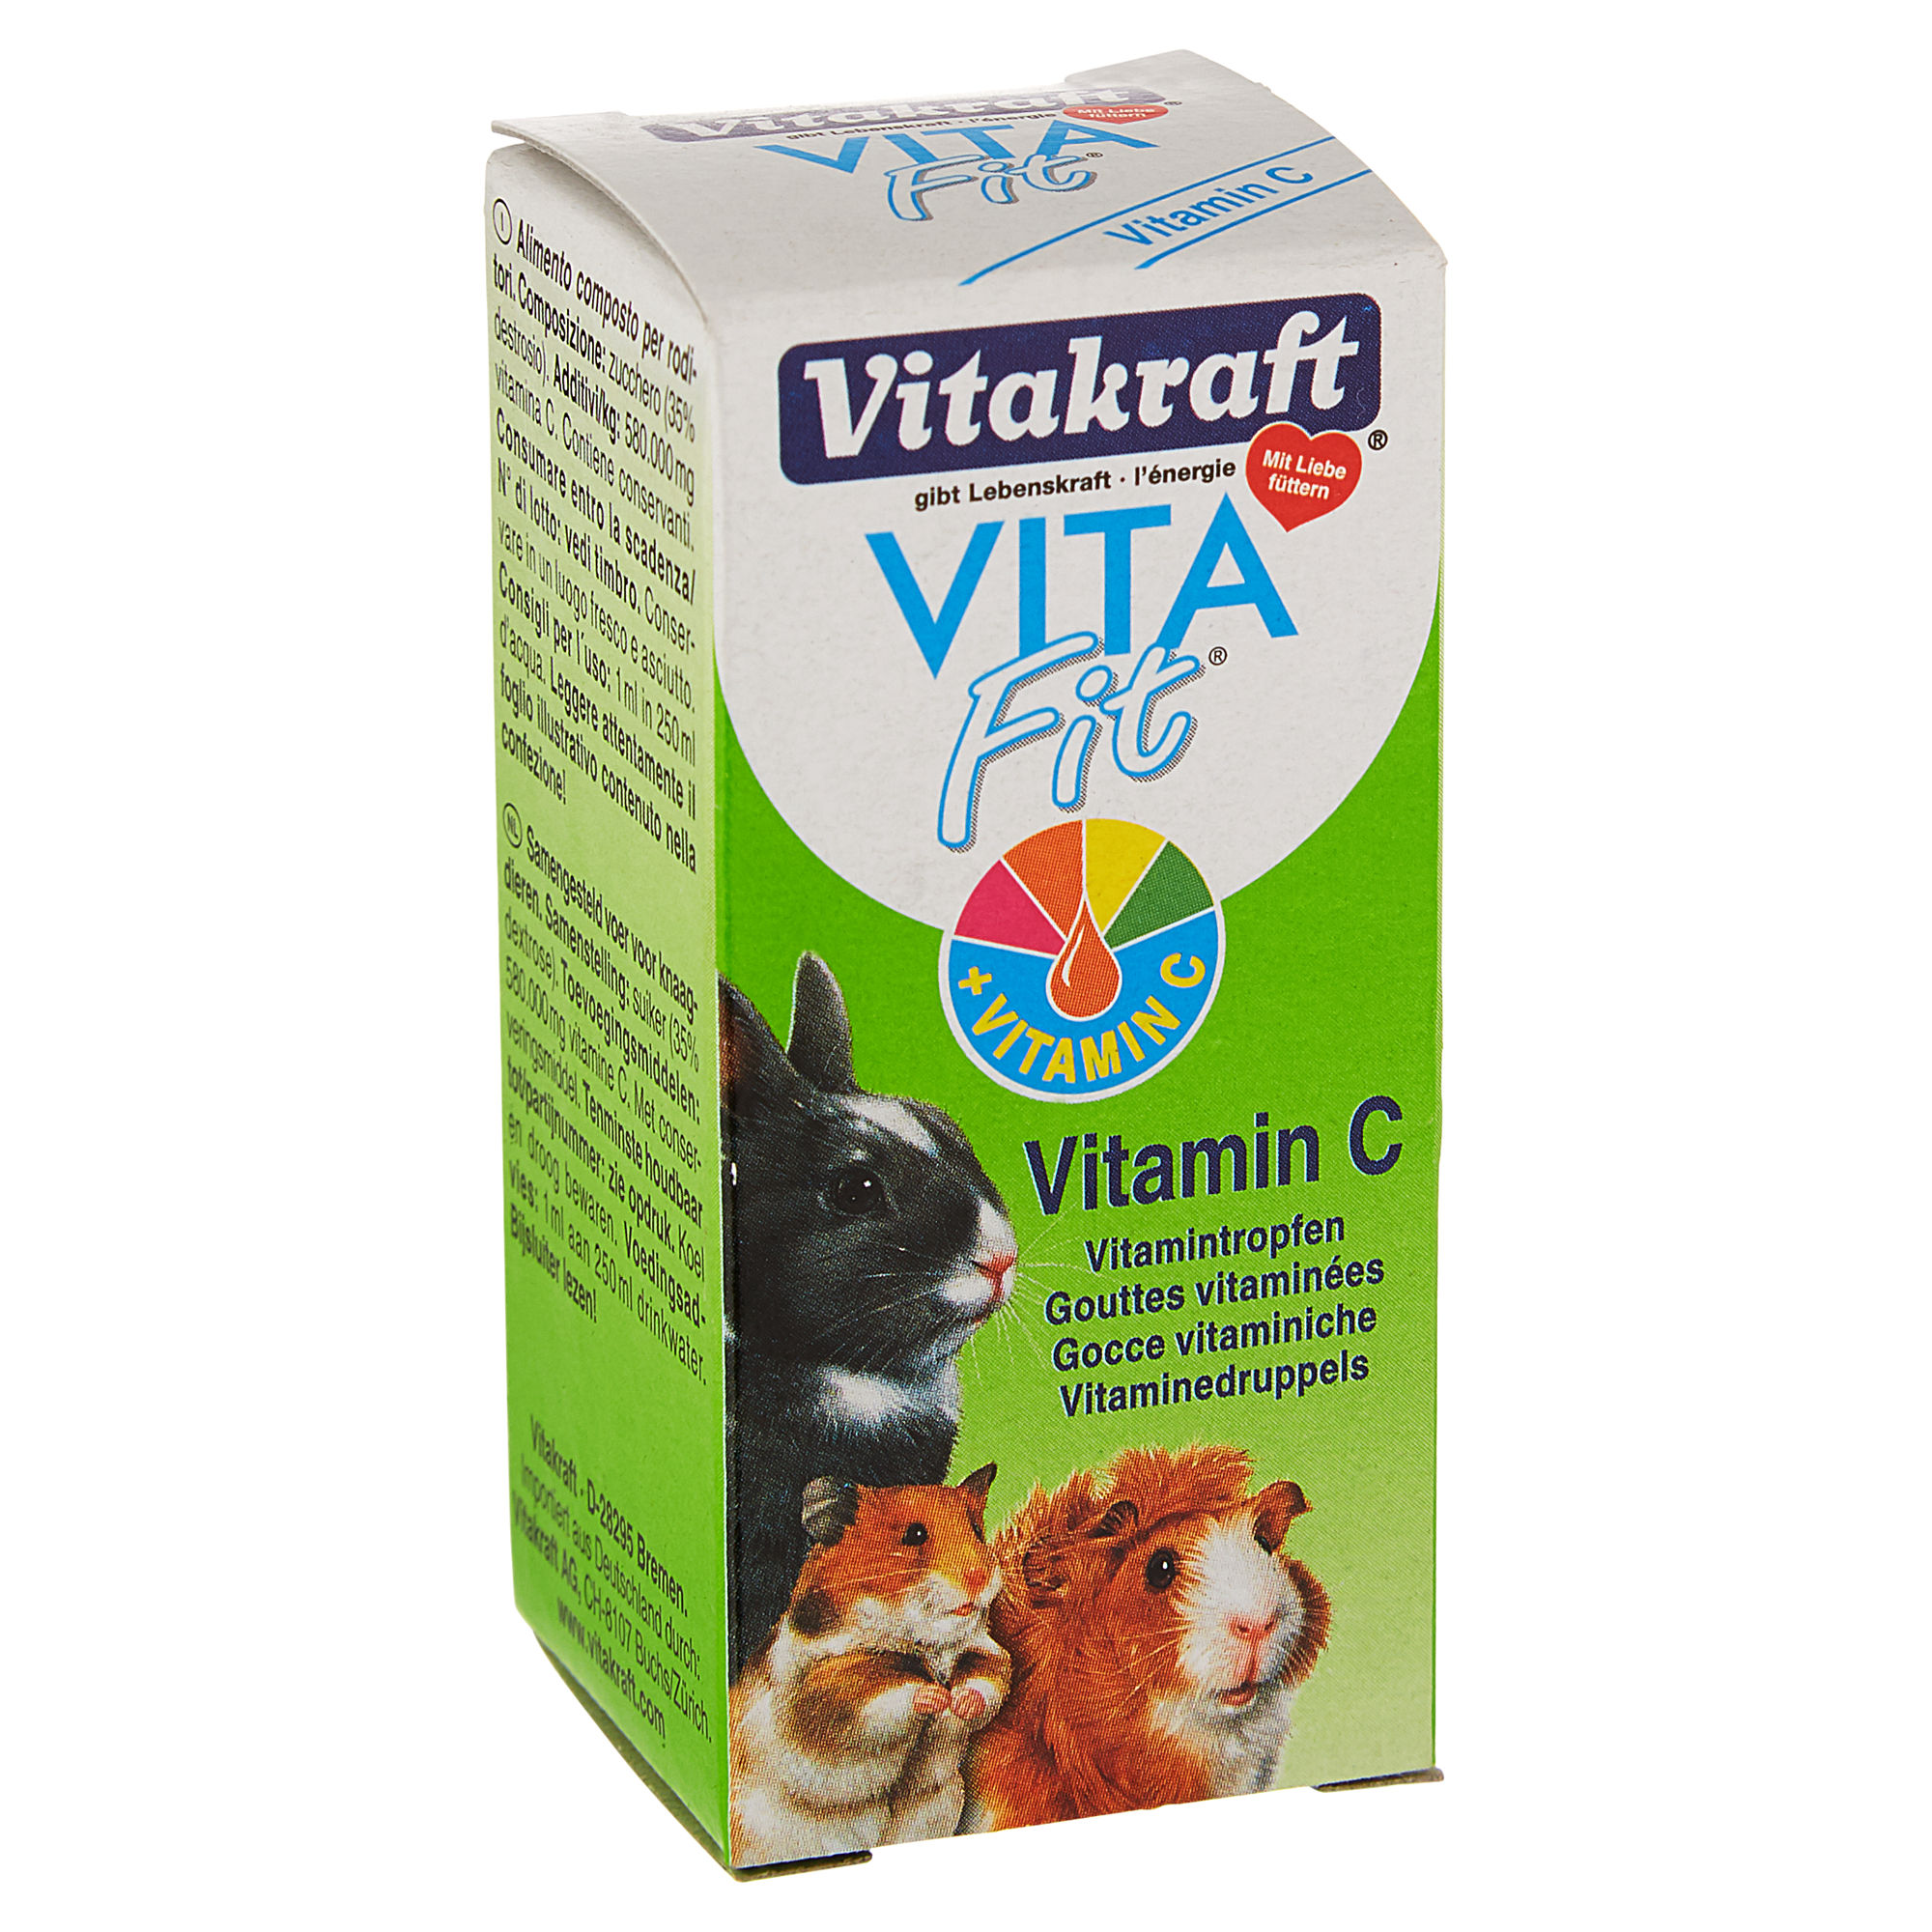 Vitamintropfen "Vita Fit" 10 ml + product picture